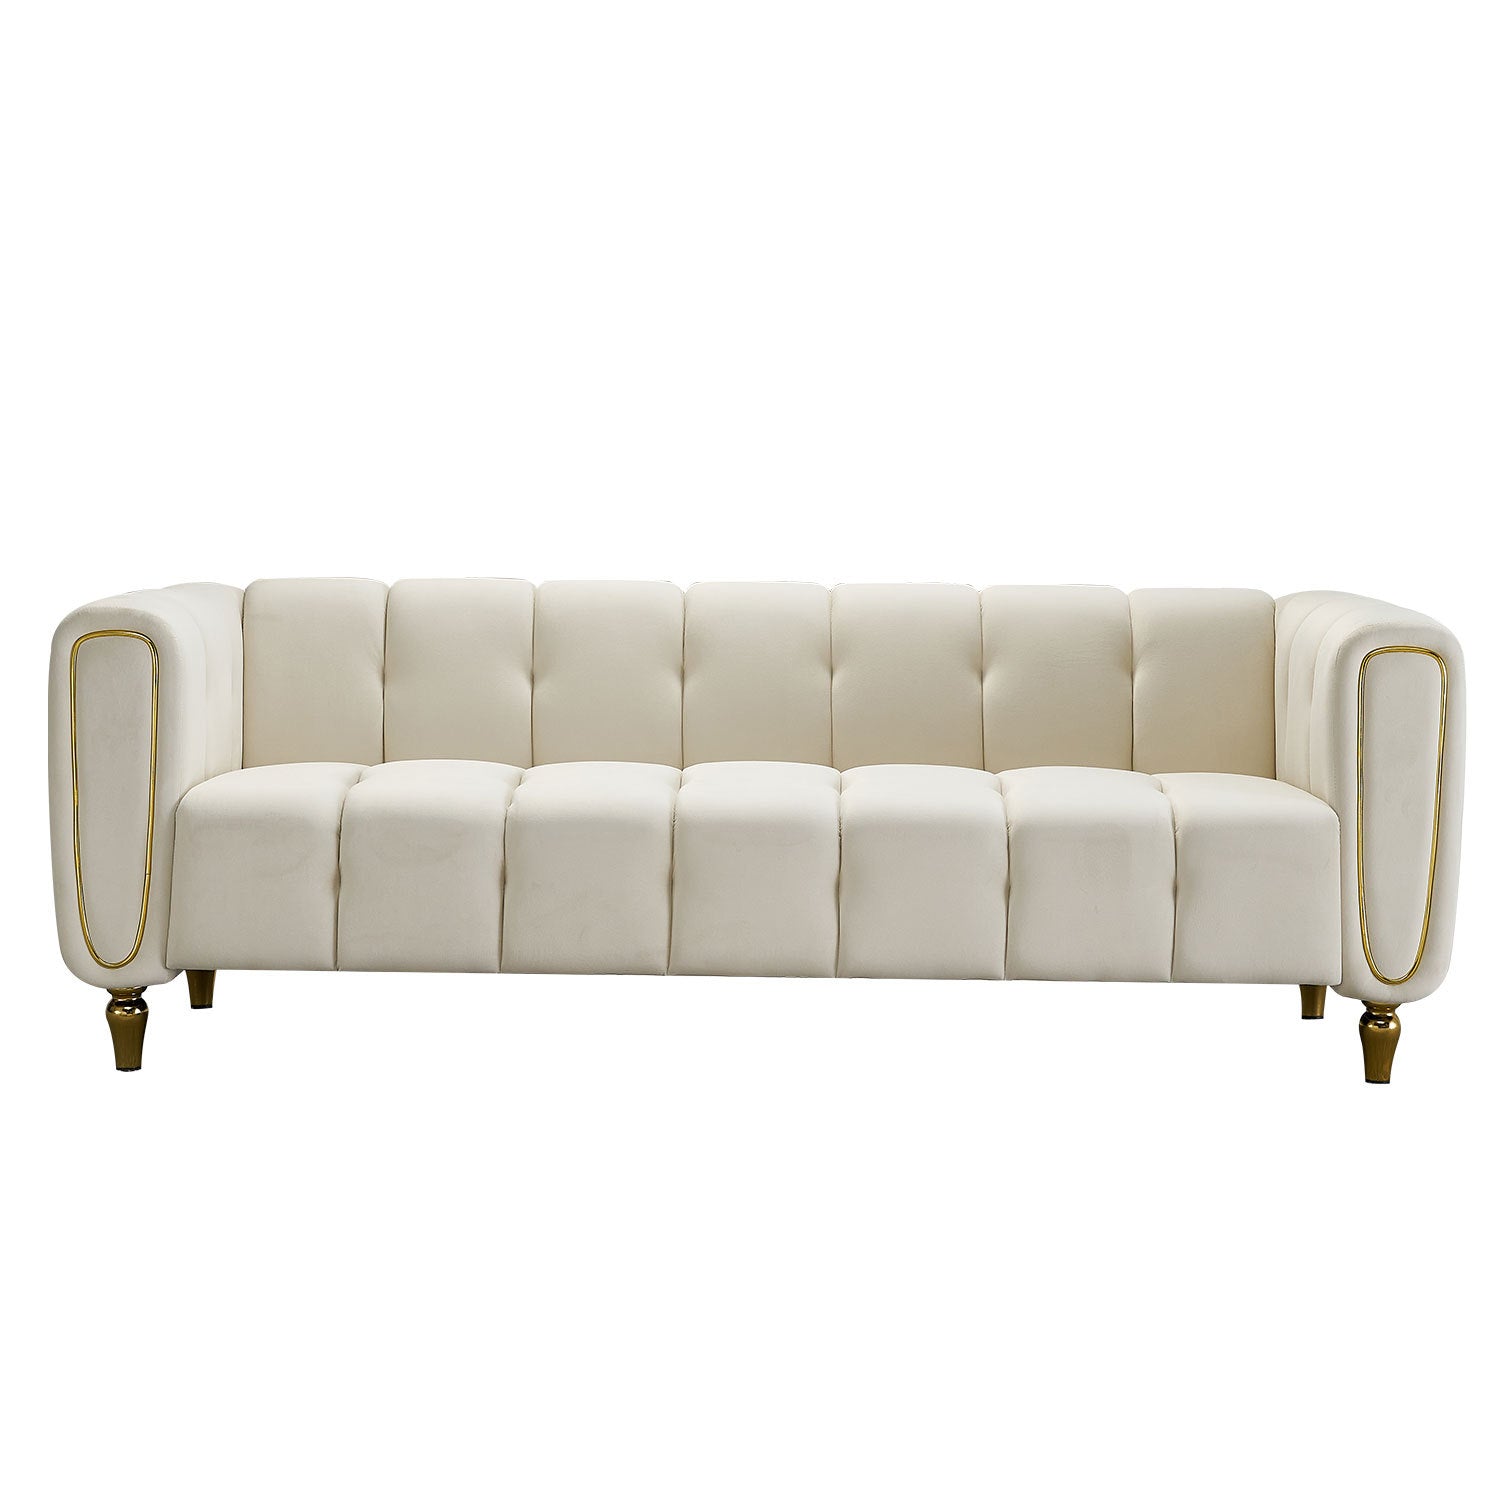 Modern Velvet Sofa 83.07 inch for Living Room Beige beige-velvet-wood-primary living space-tufted